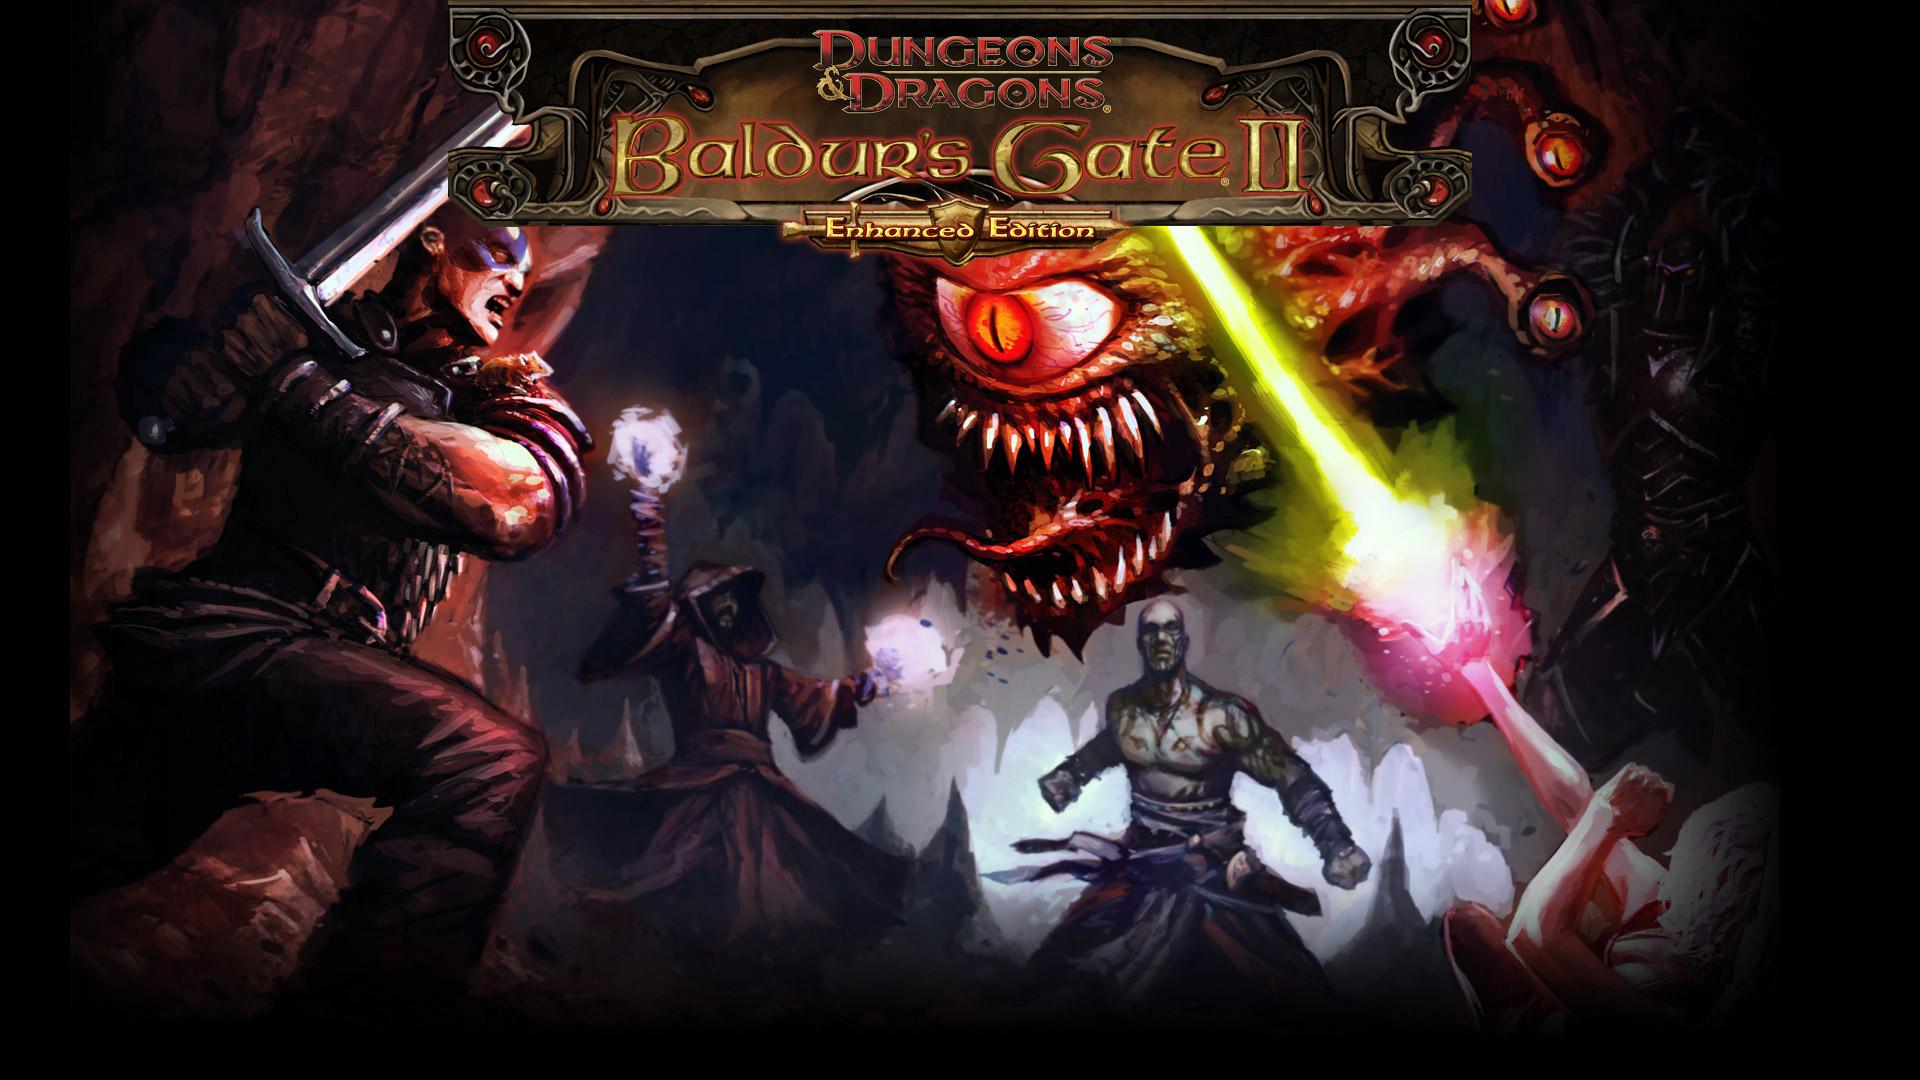 Baldur’s Gate II: Enhanced Edition out this November